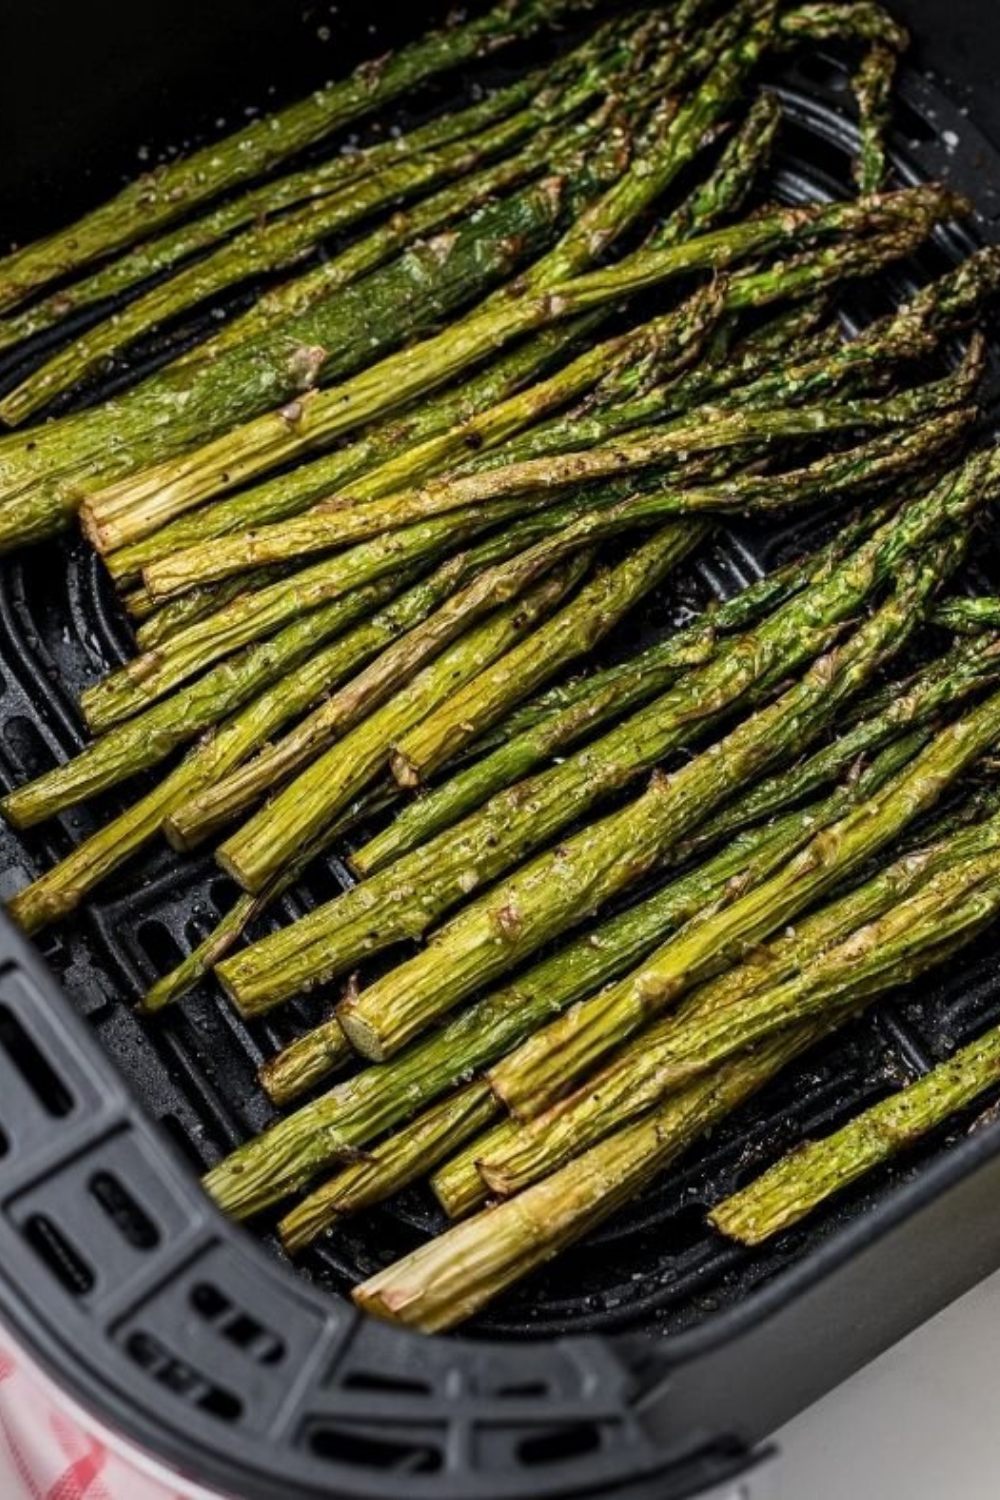 Air Fryer Weight Watchers Asparagus